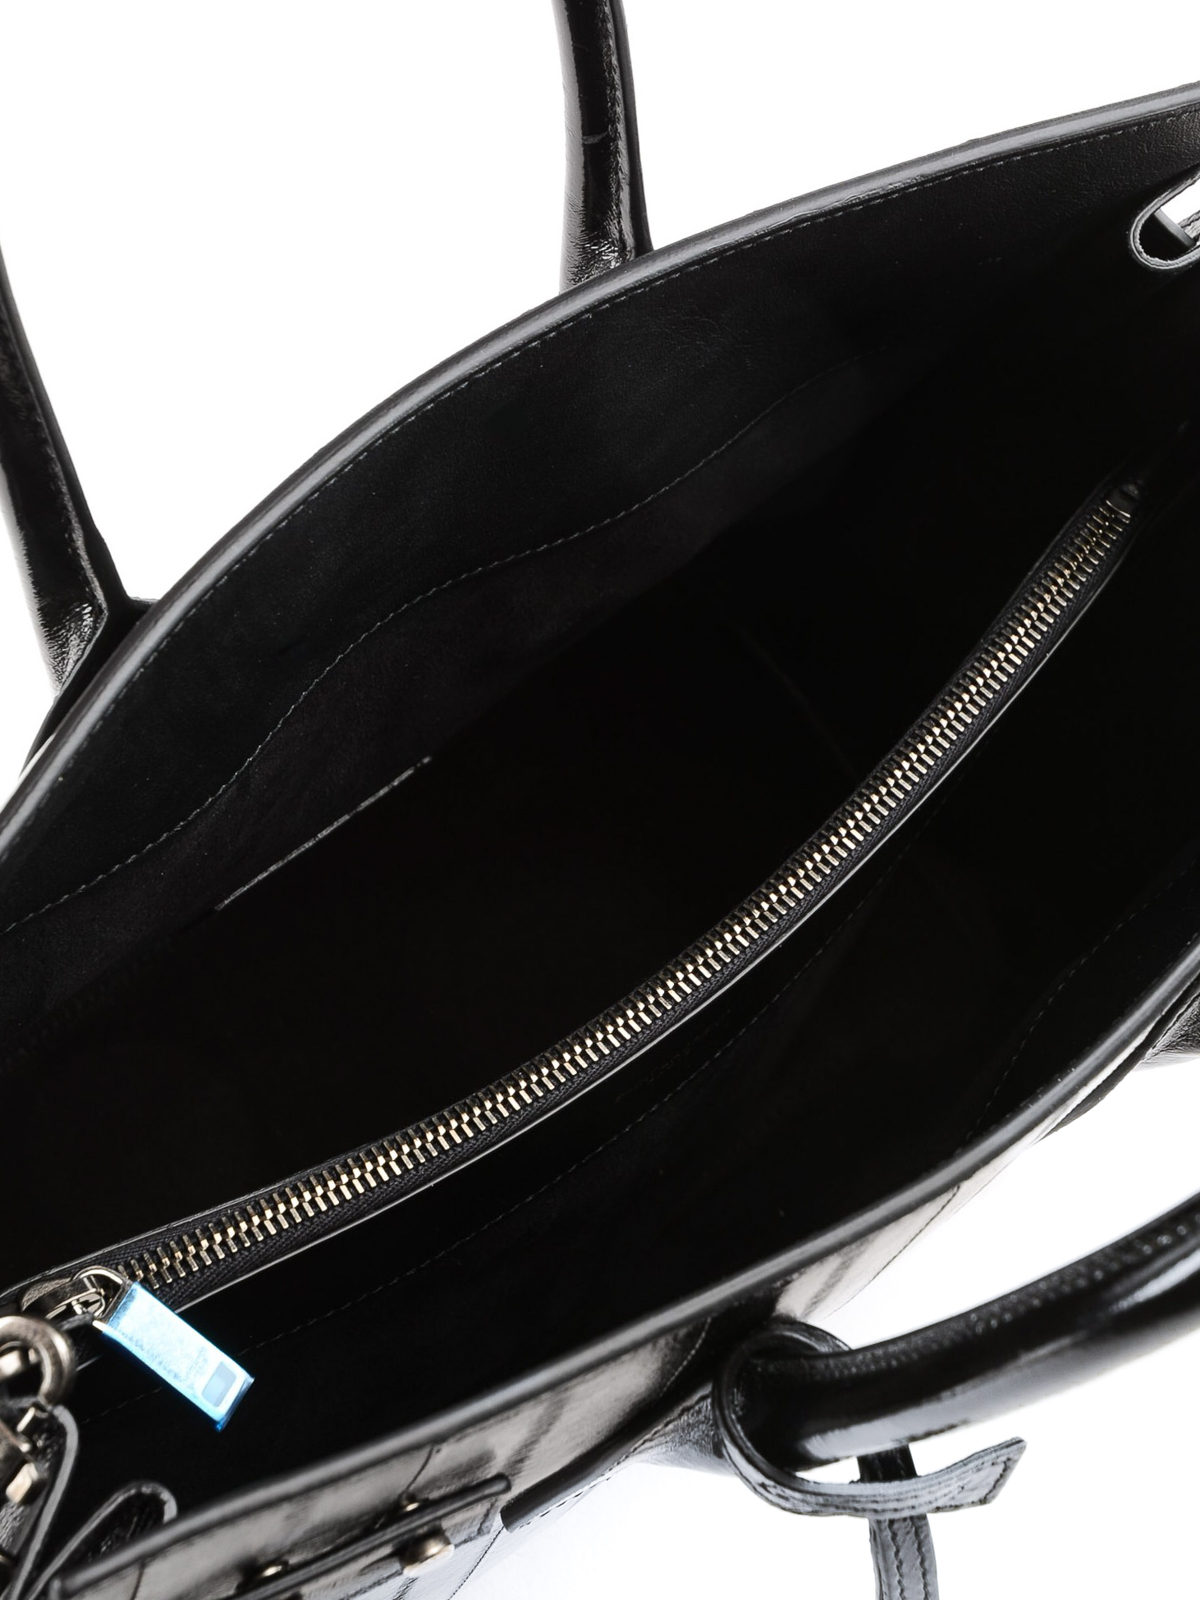 Saint Laurent Sac De Jour Bags & Handbags for Women for sale